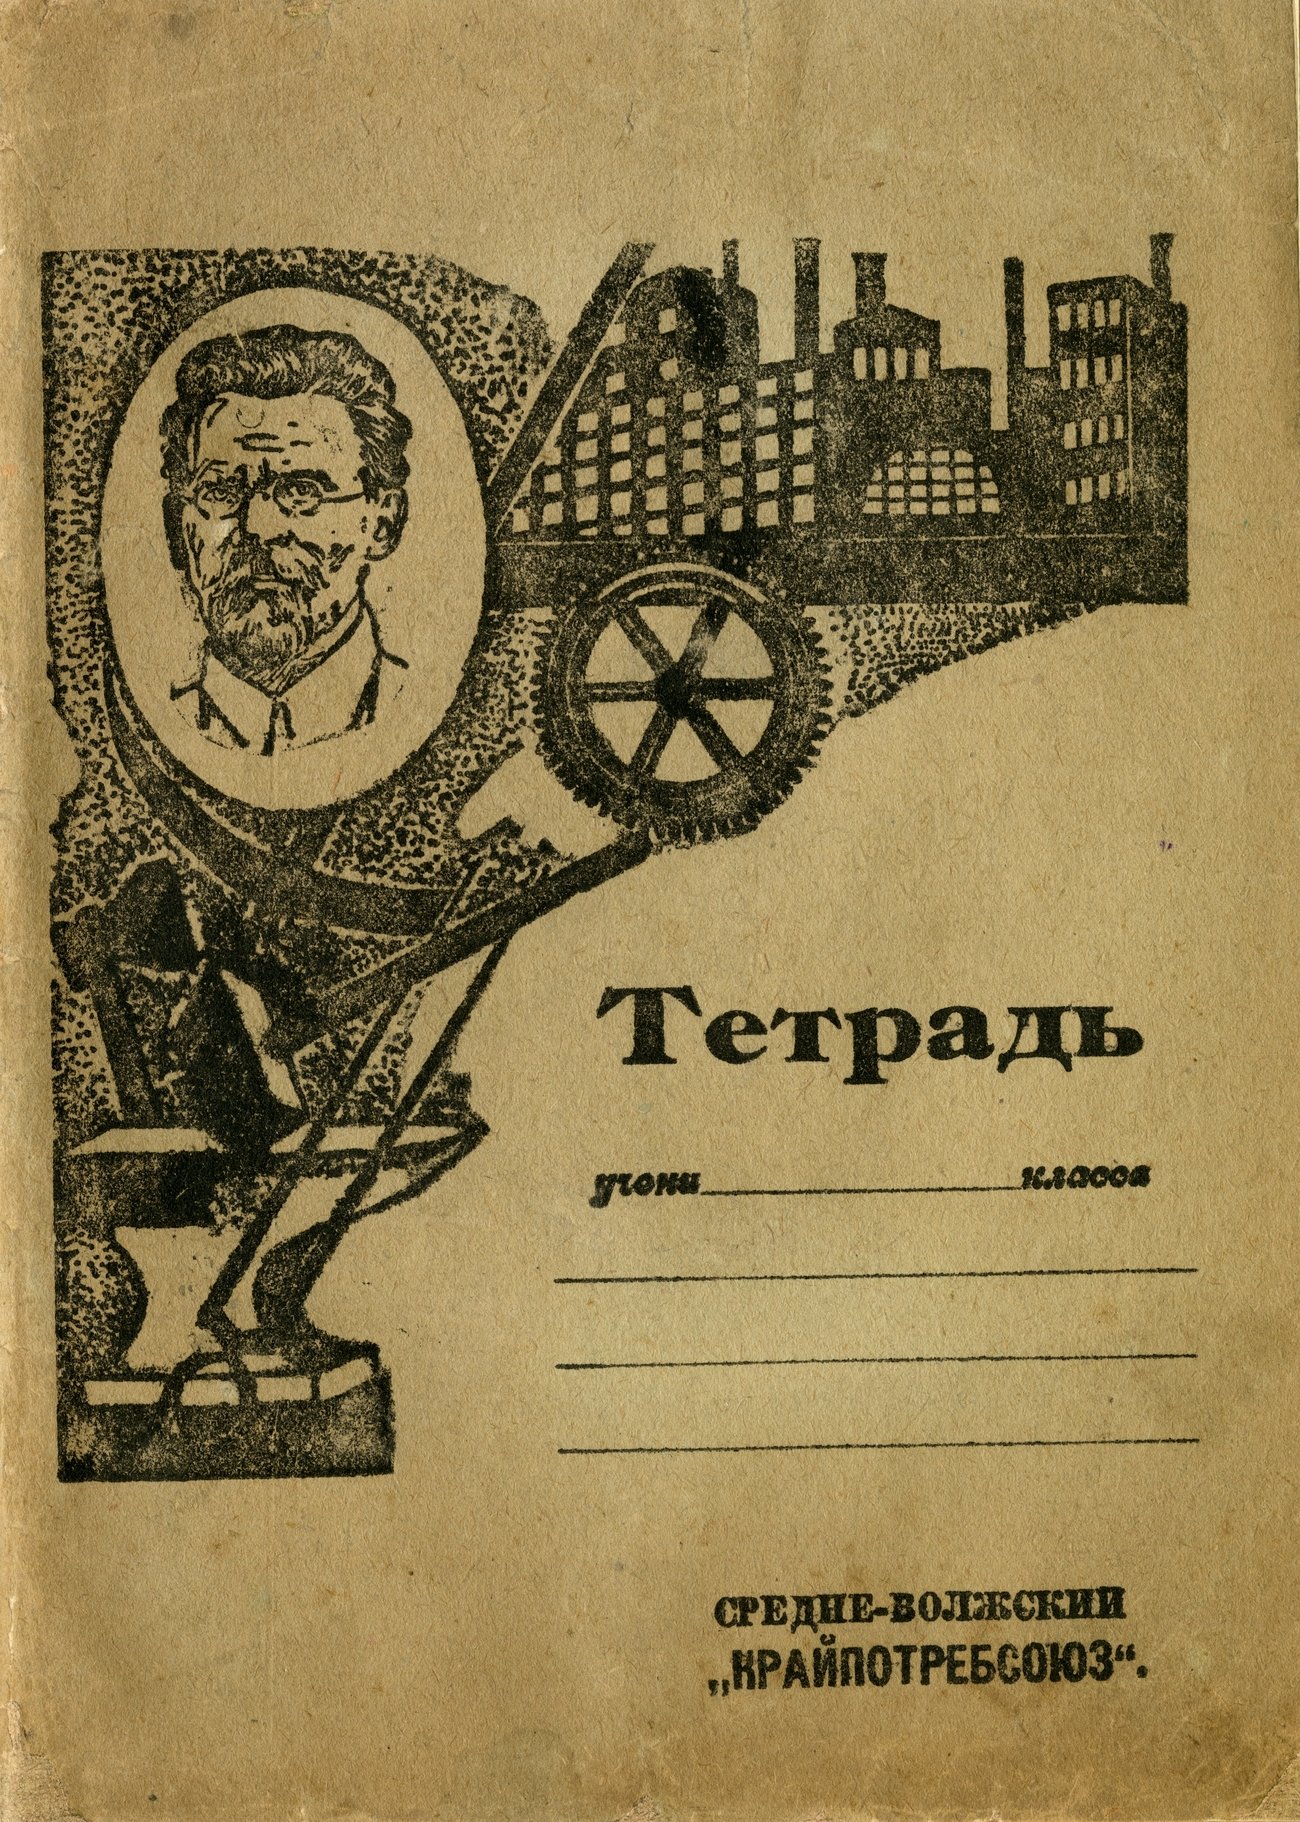 Тетрадь 1929 Средне-Волжский Крайпотребсоюз